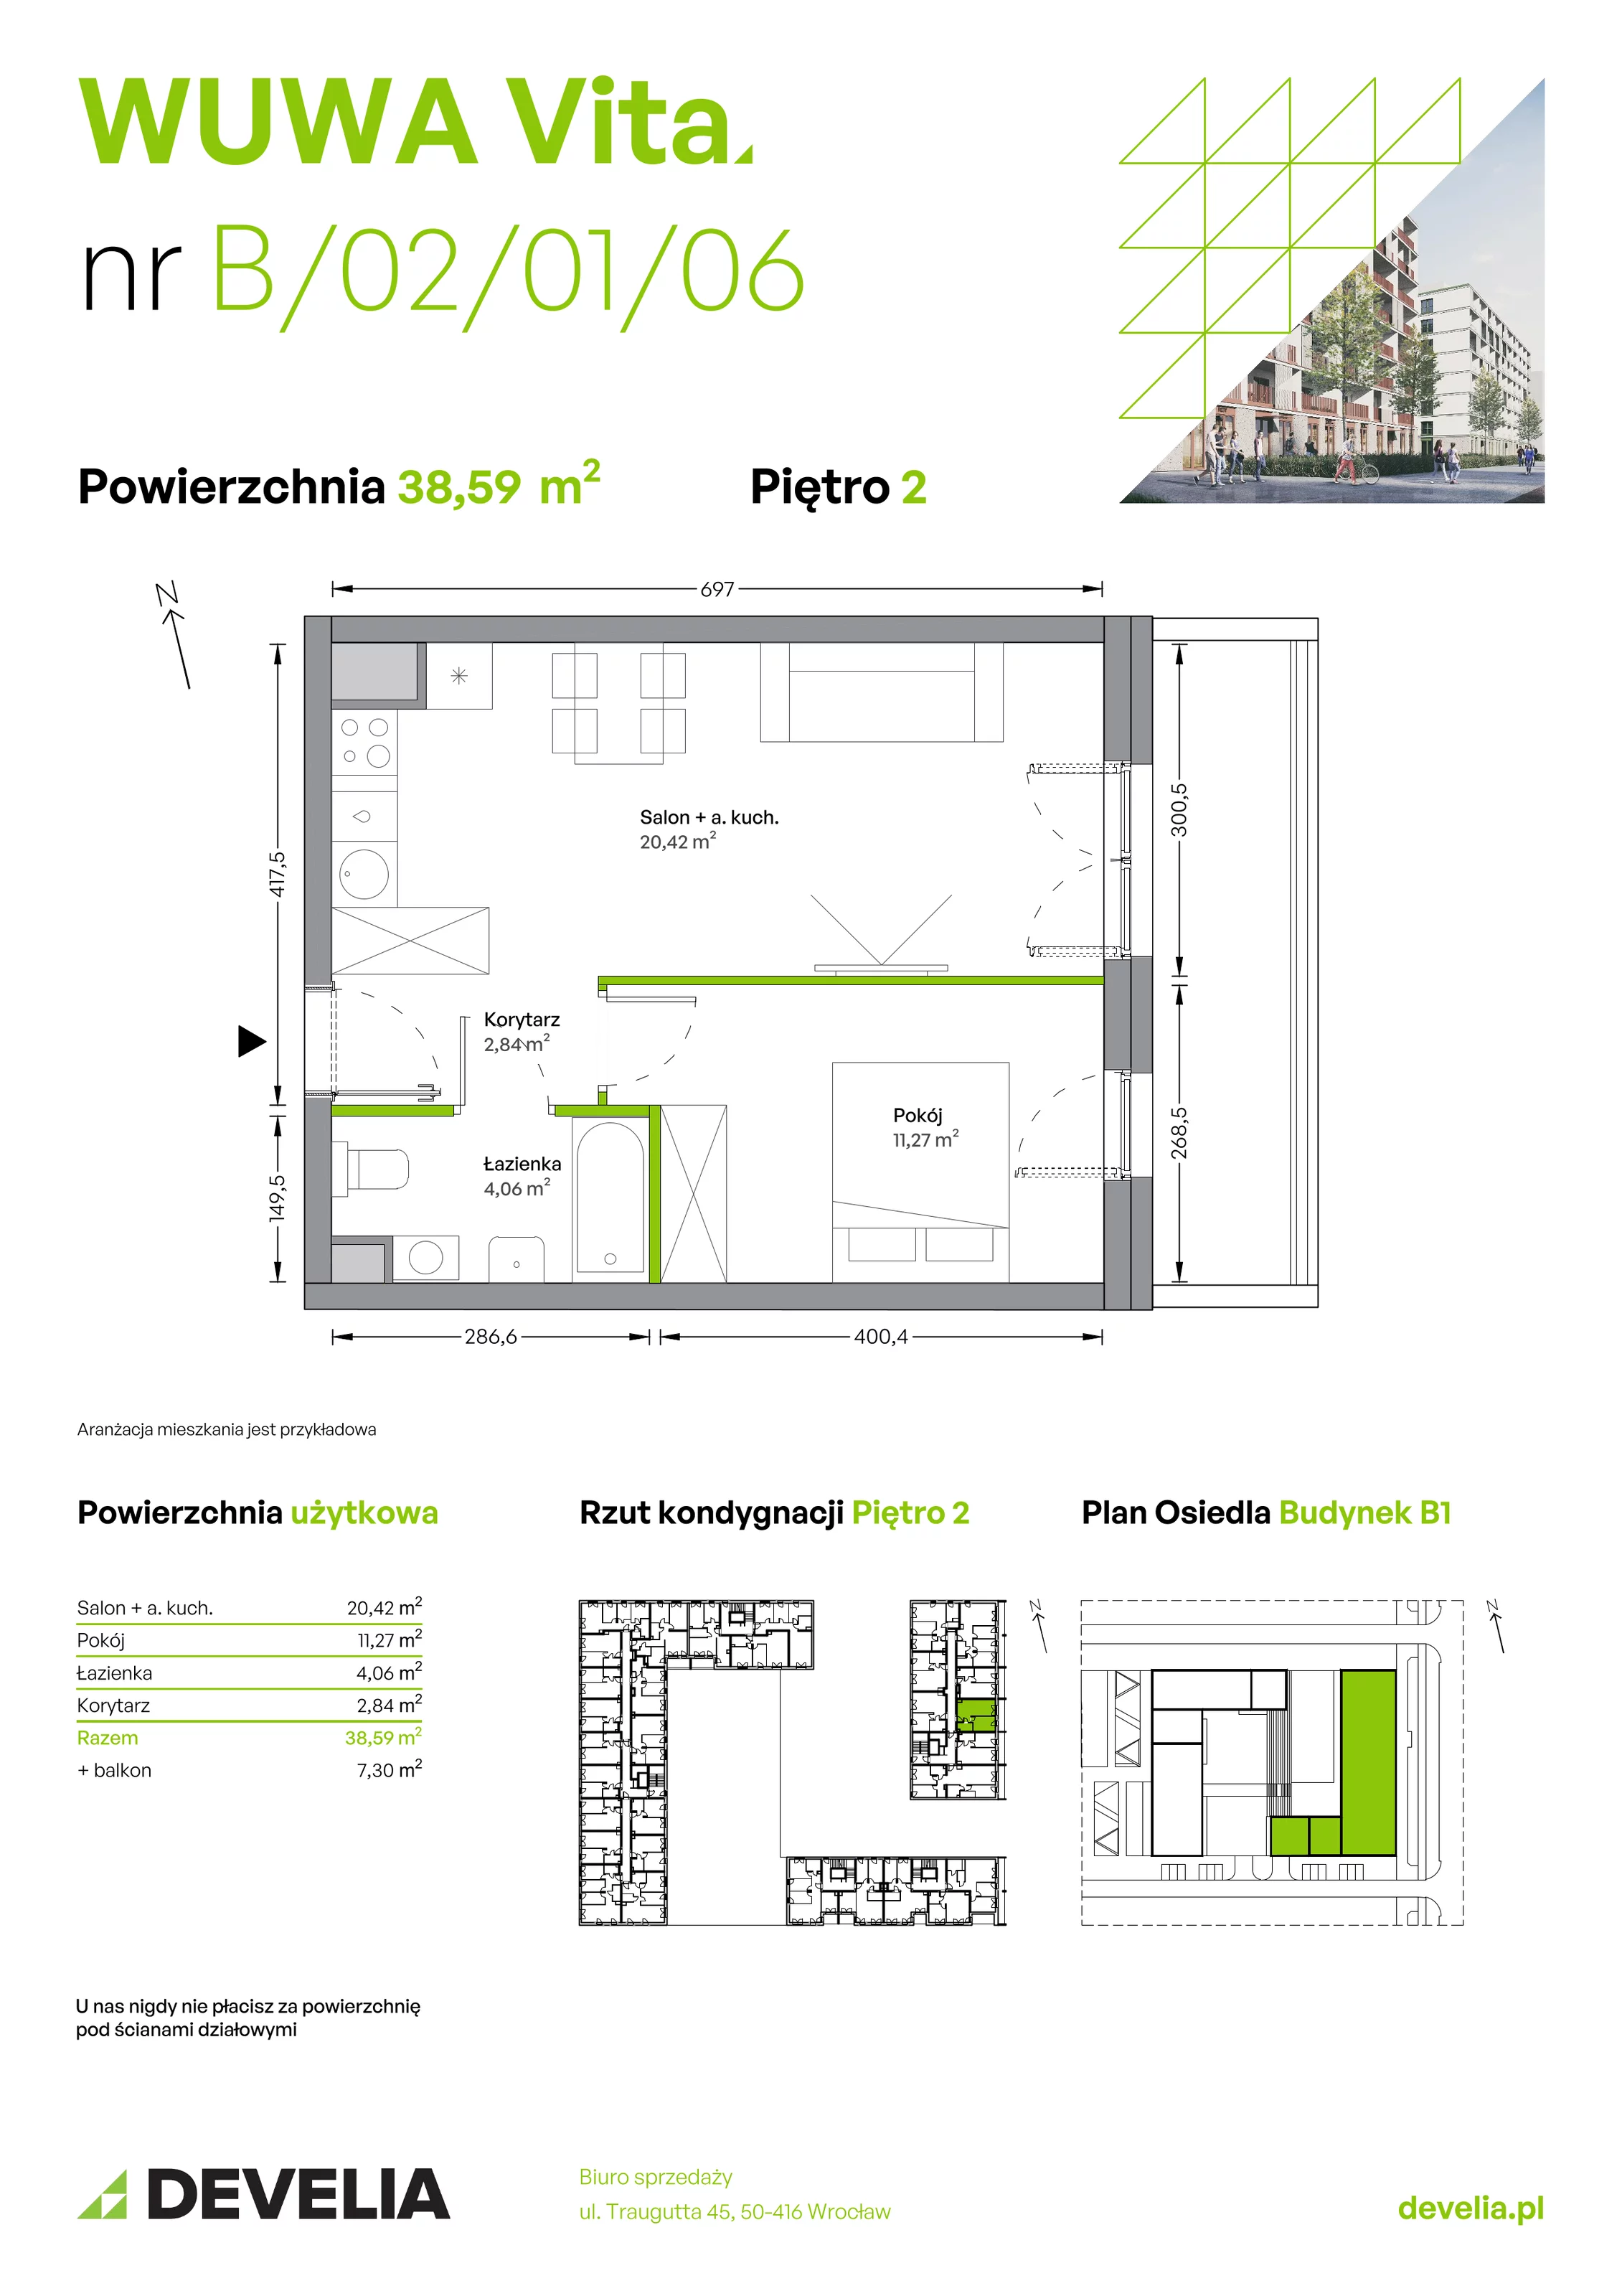 Mieszkanie 38,59 m², piętro 2, oferta nr B.02.01.06, WUWA Vita, Wrocław, Żerniki, Fabryczna, ul. Tadeusza Brzozy